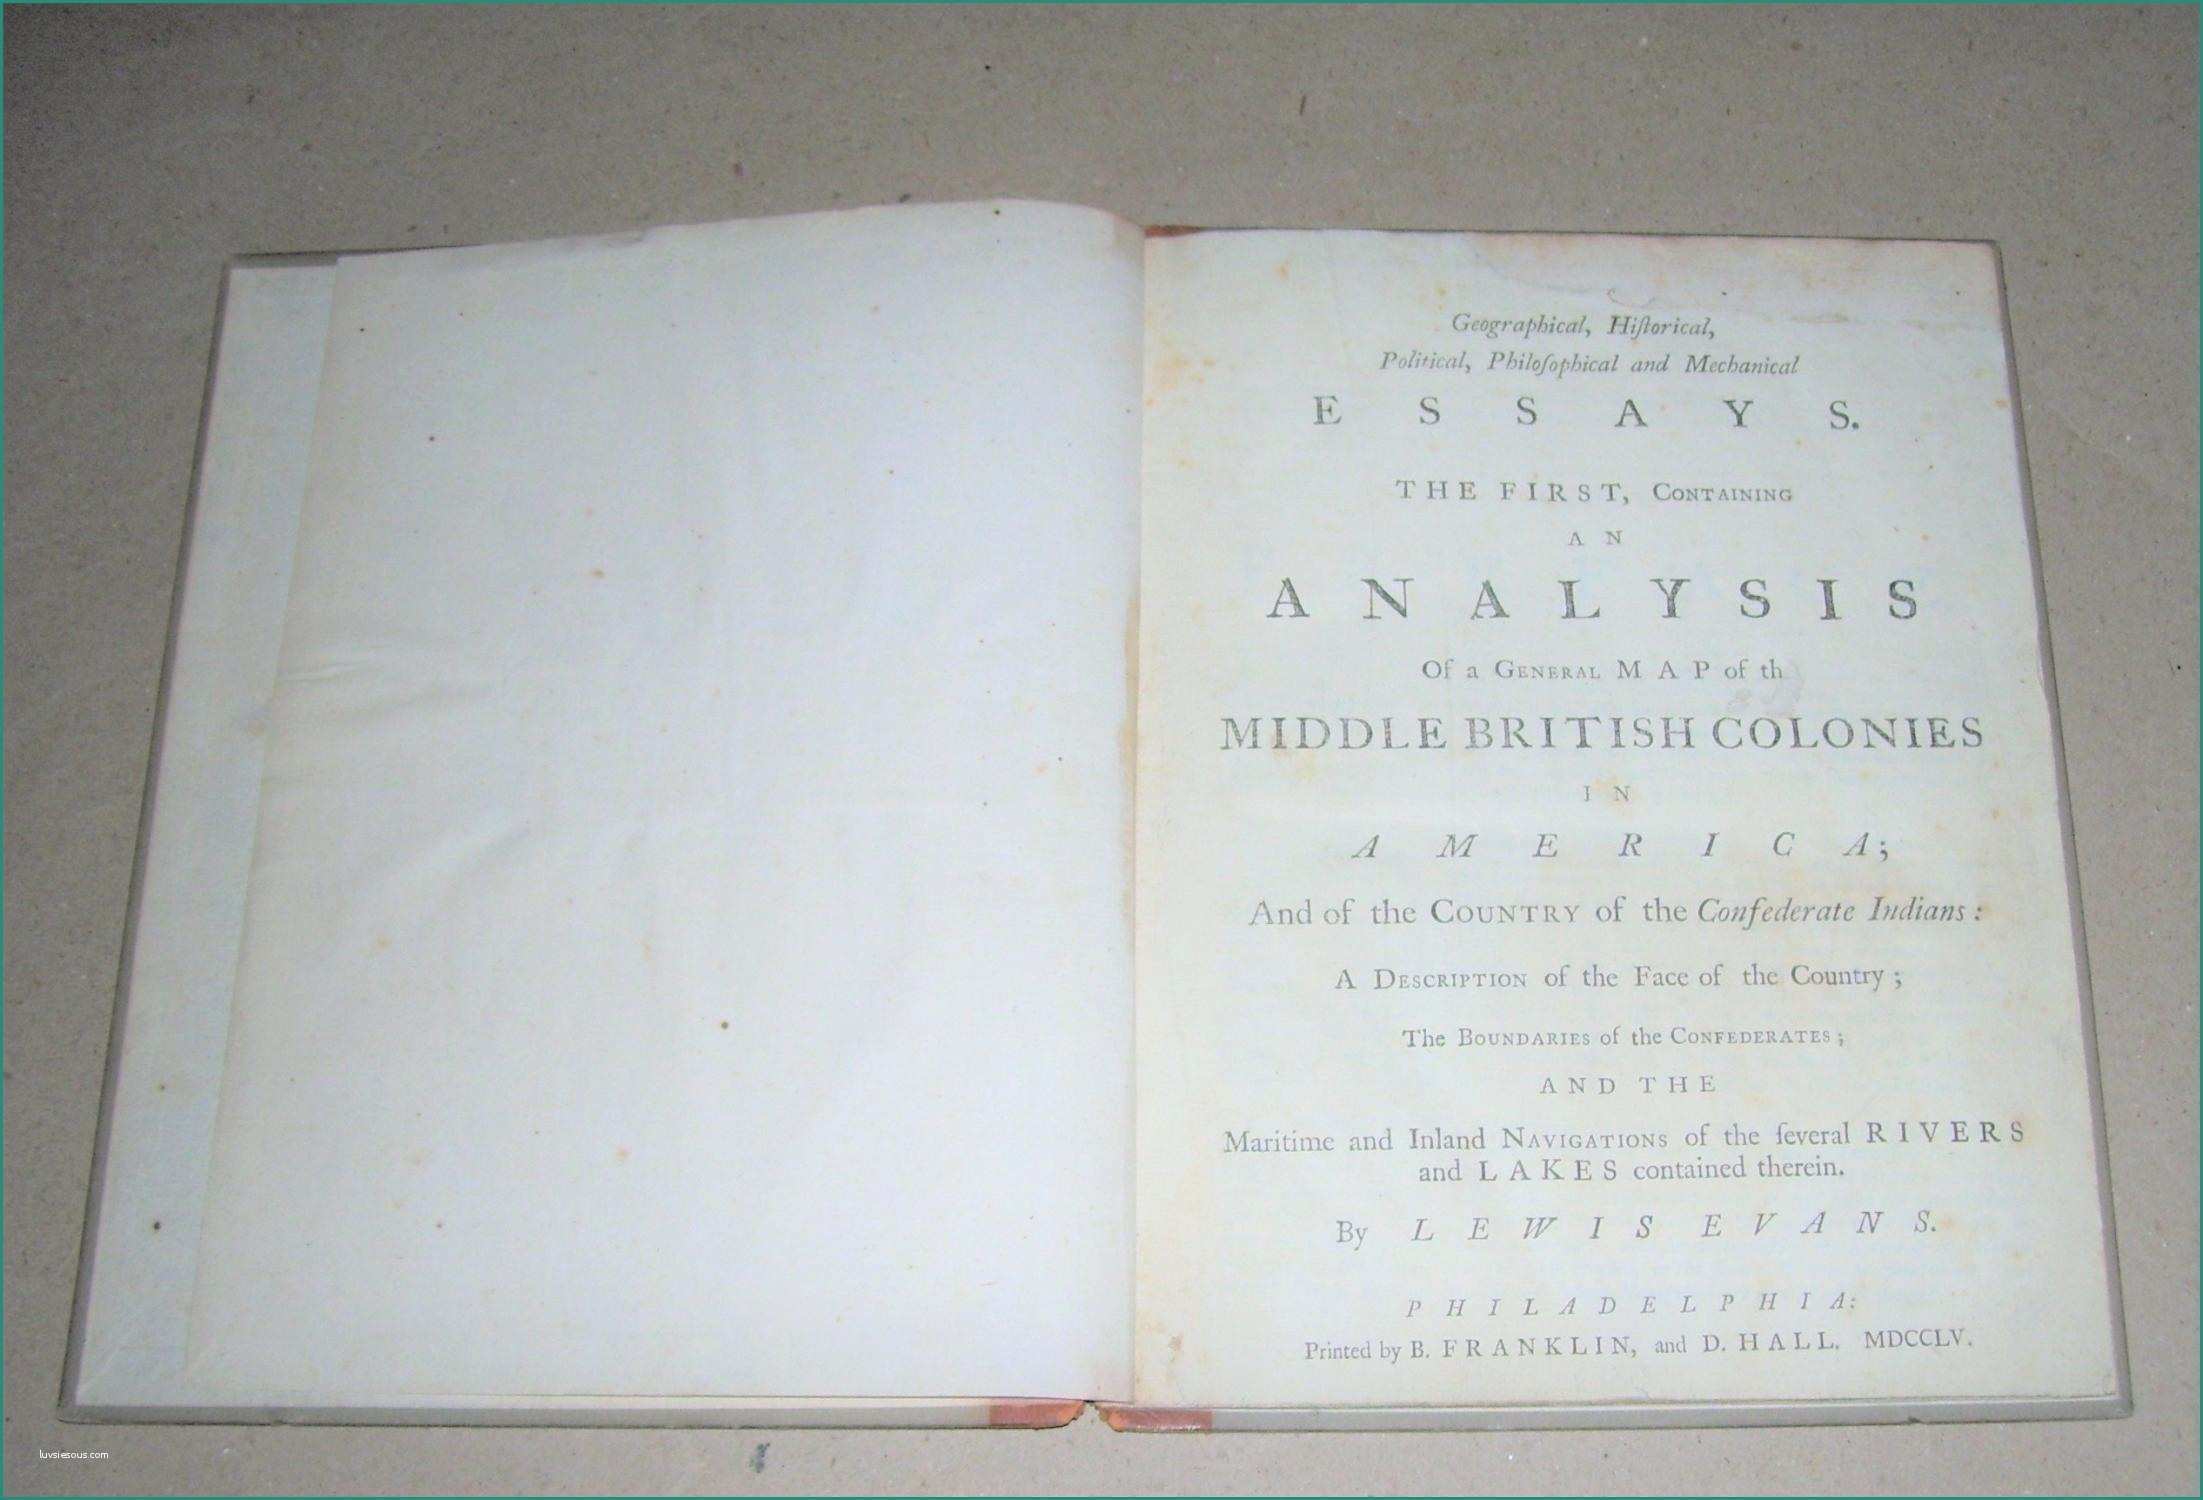 Cornici Word Pergamena E Vialibri Rare Books From 1755 Page 21